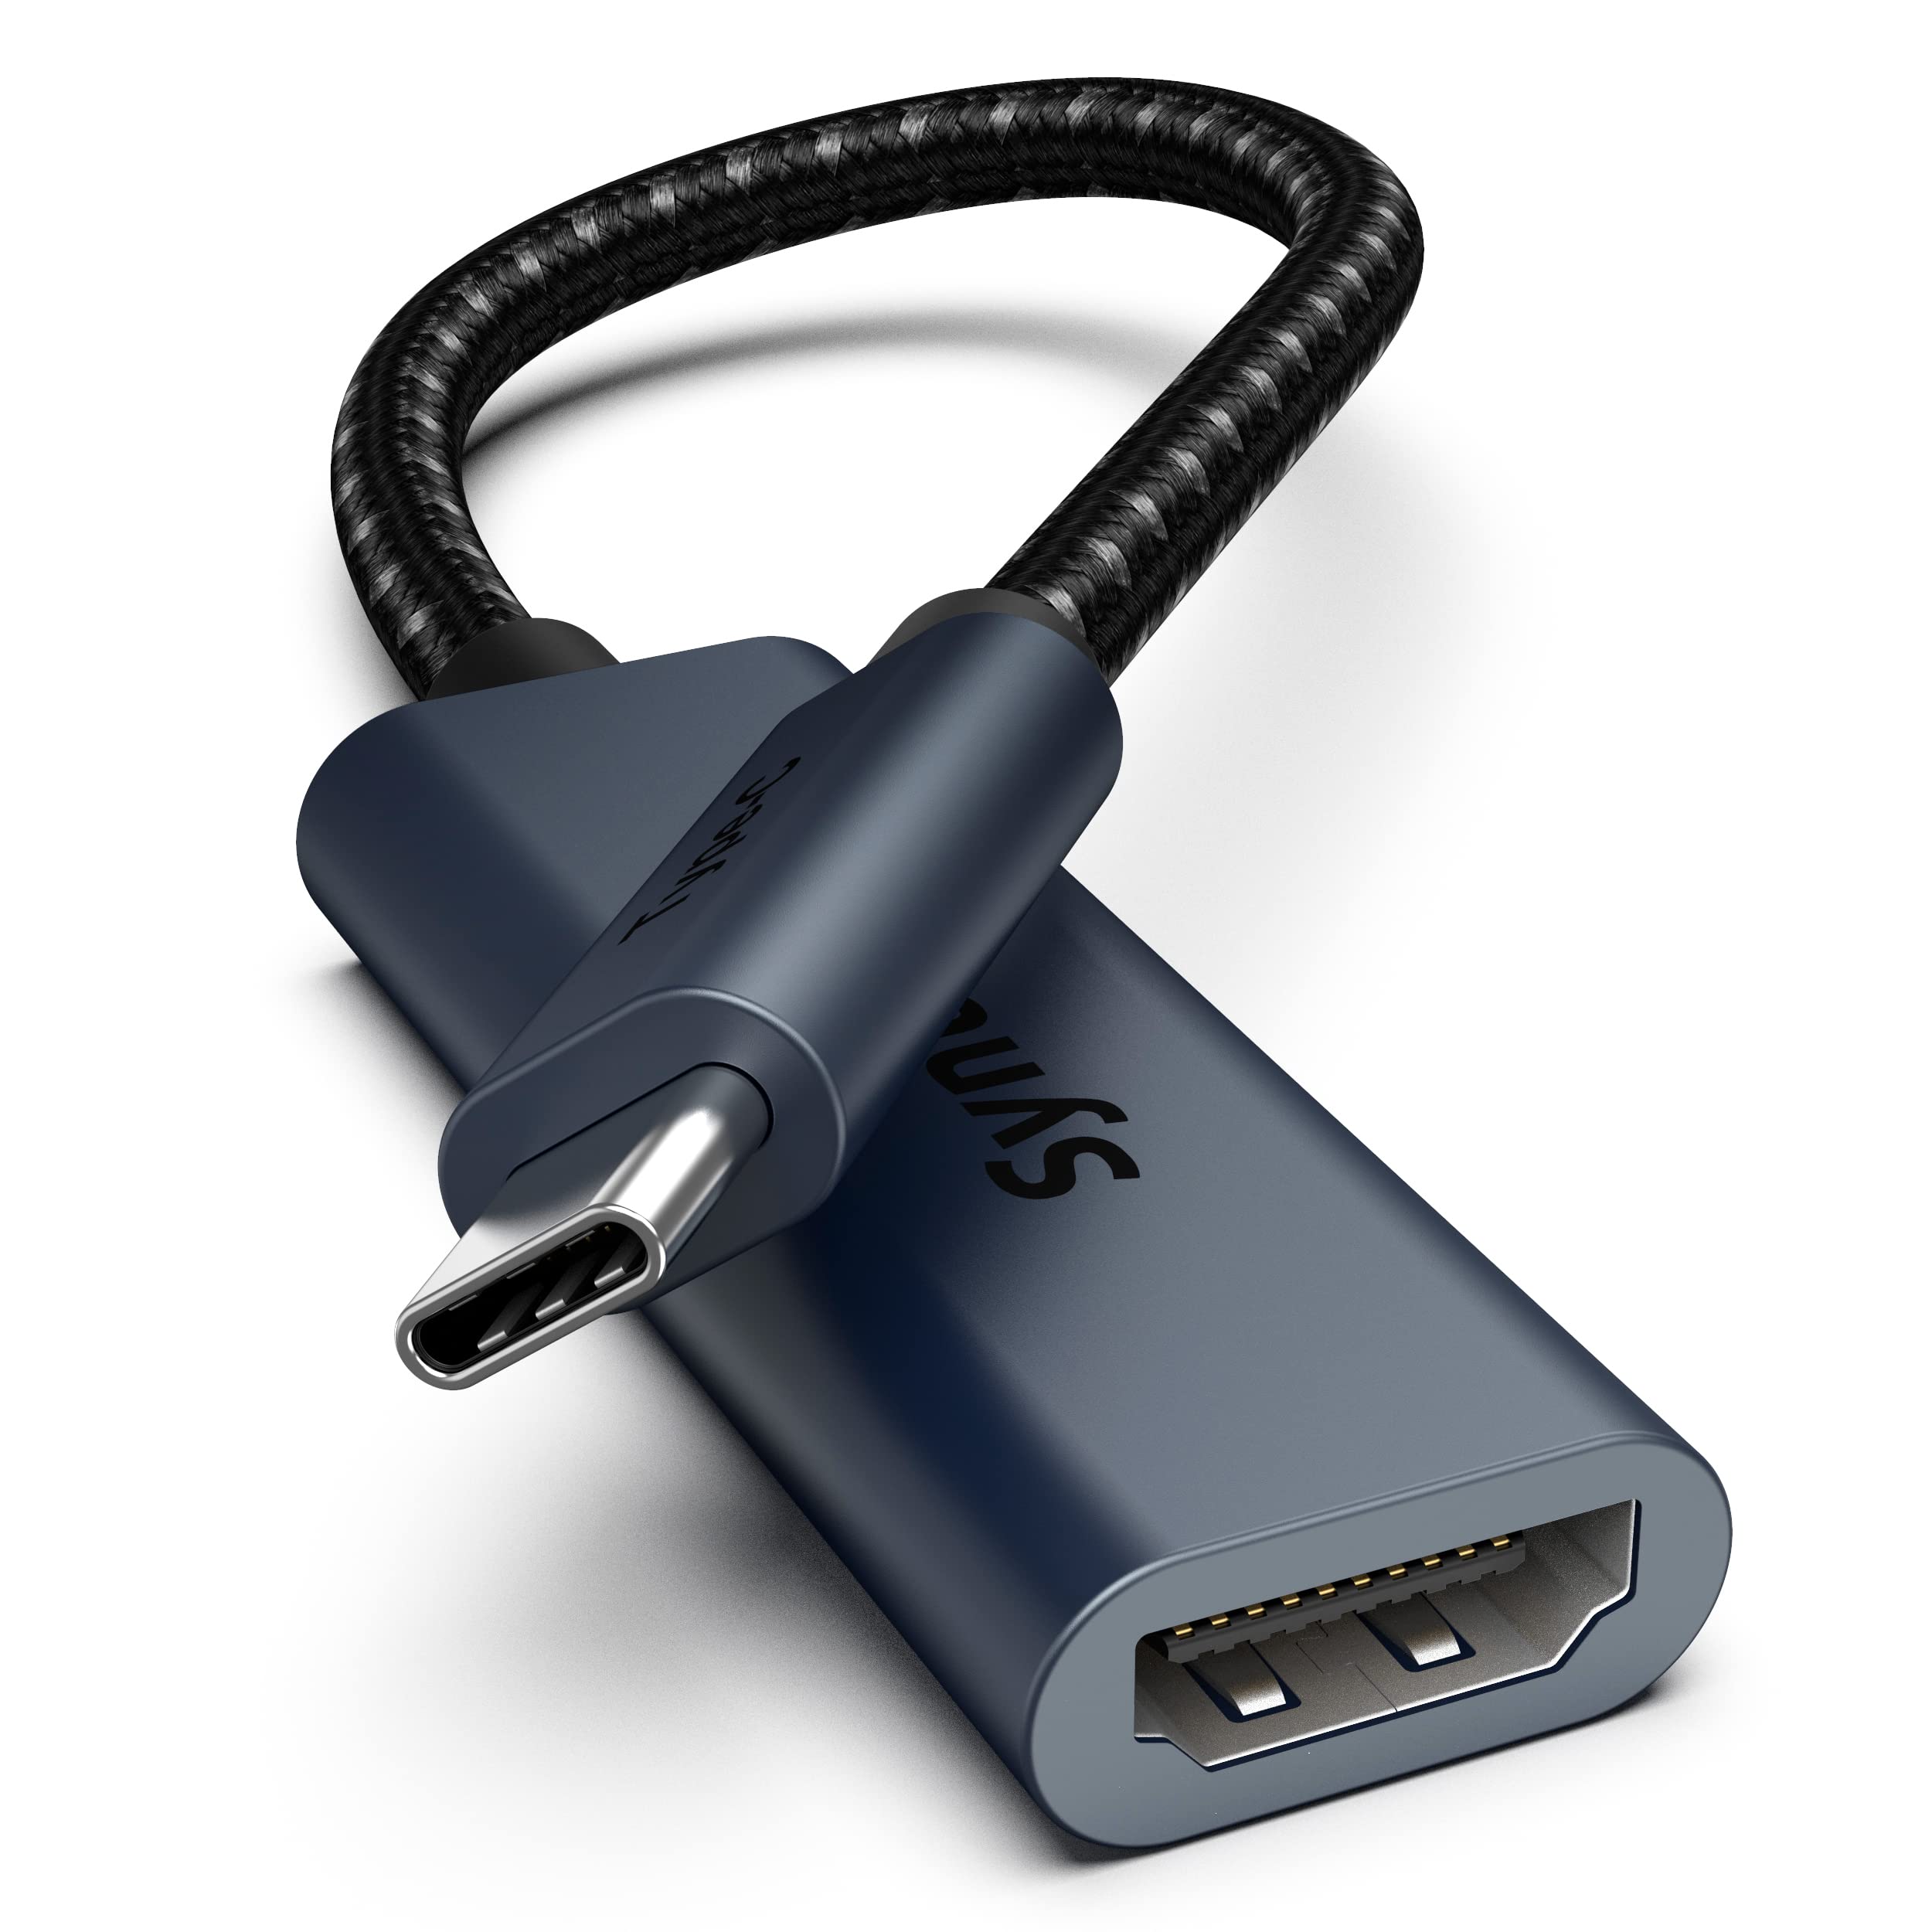 HDMI C to USB C dark gray color